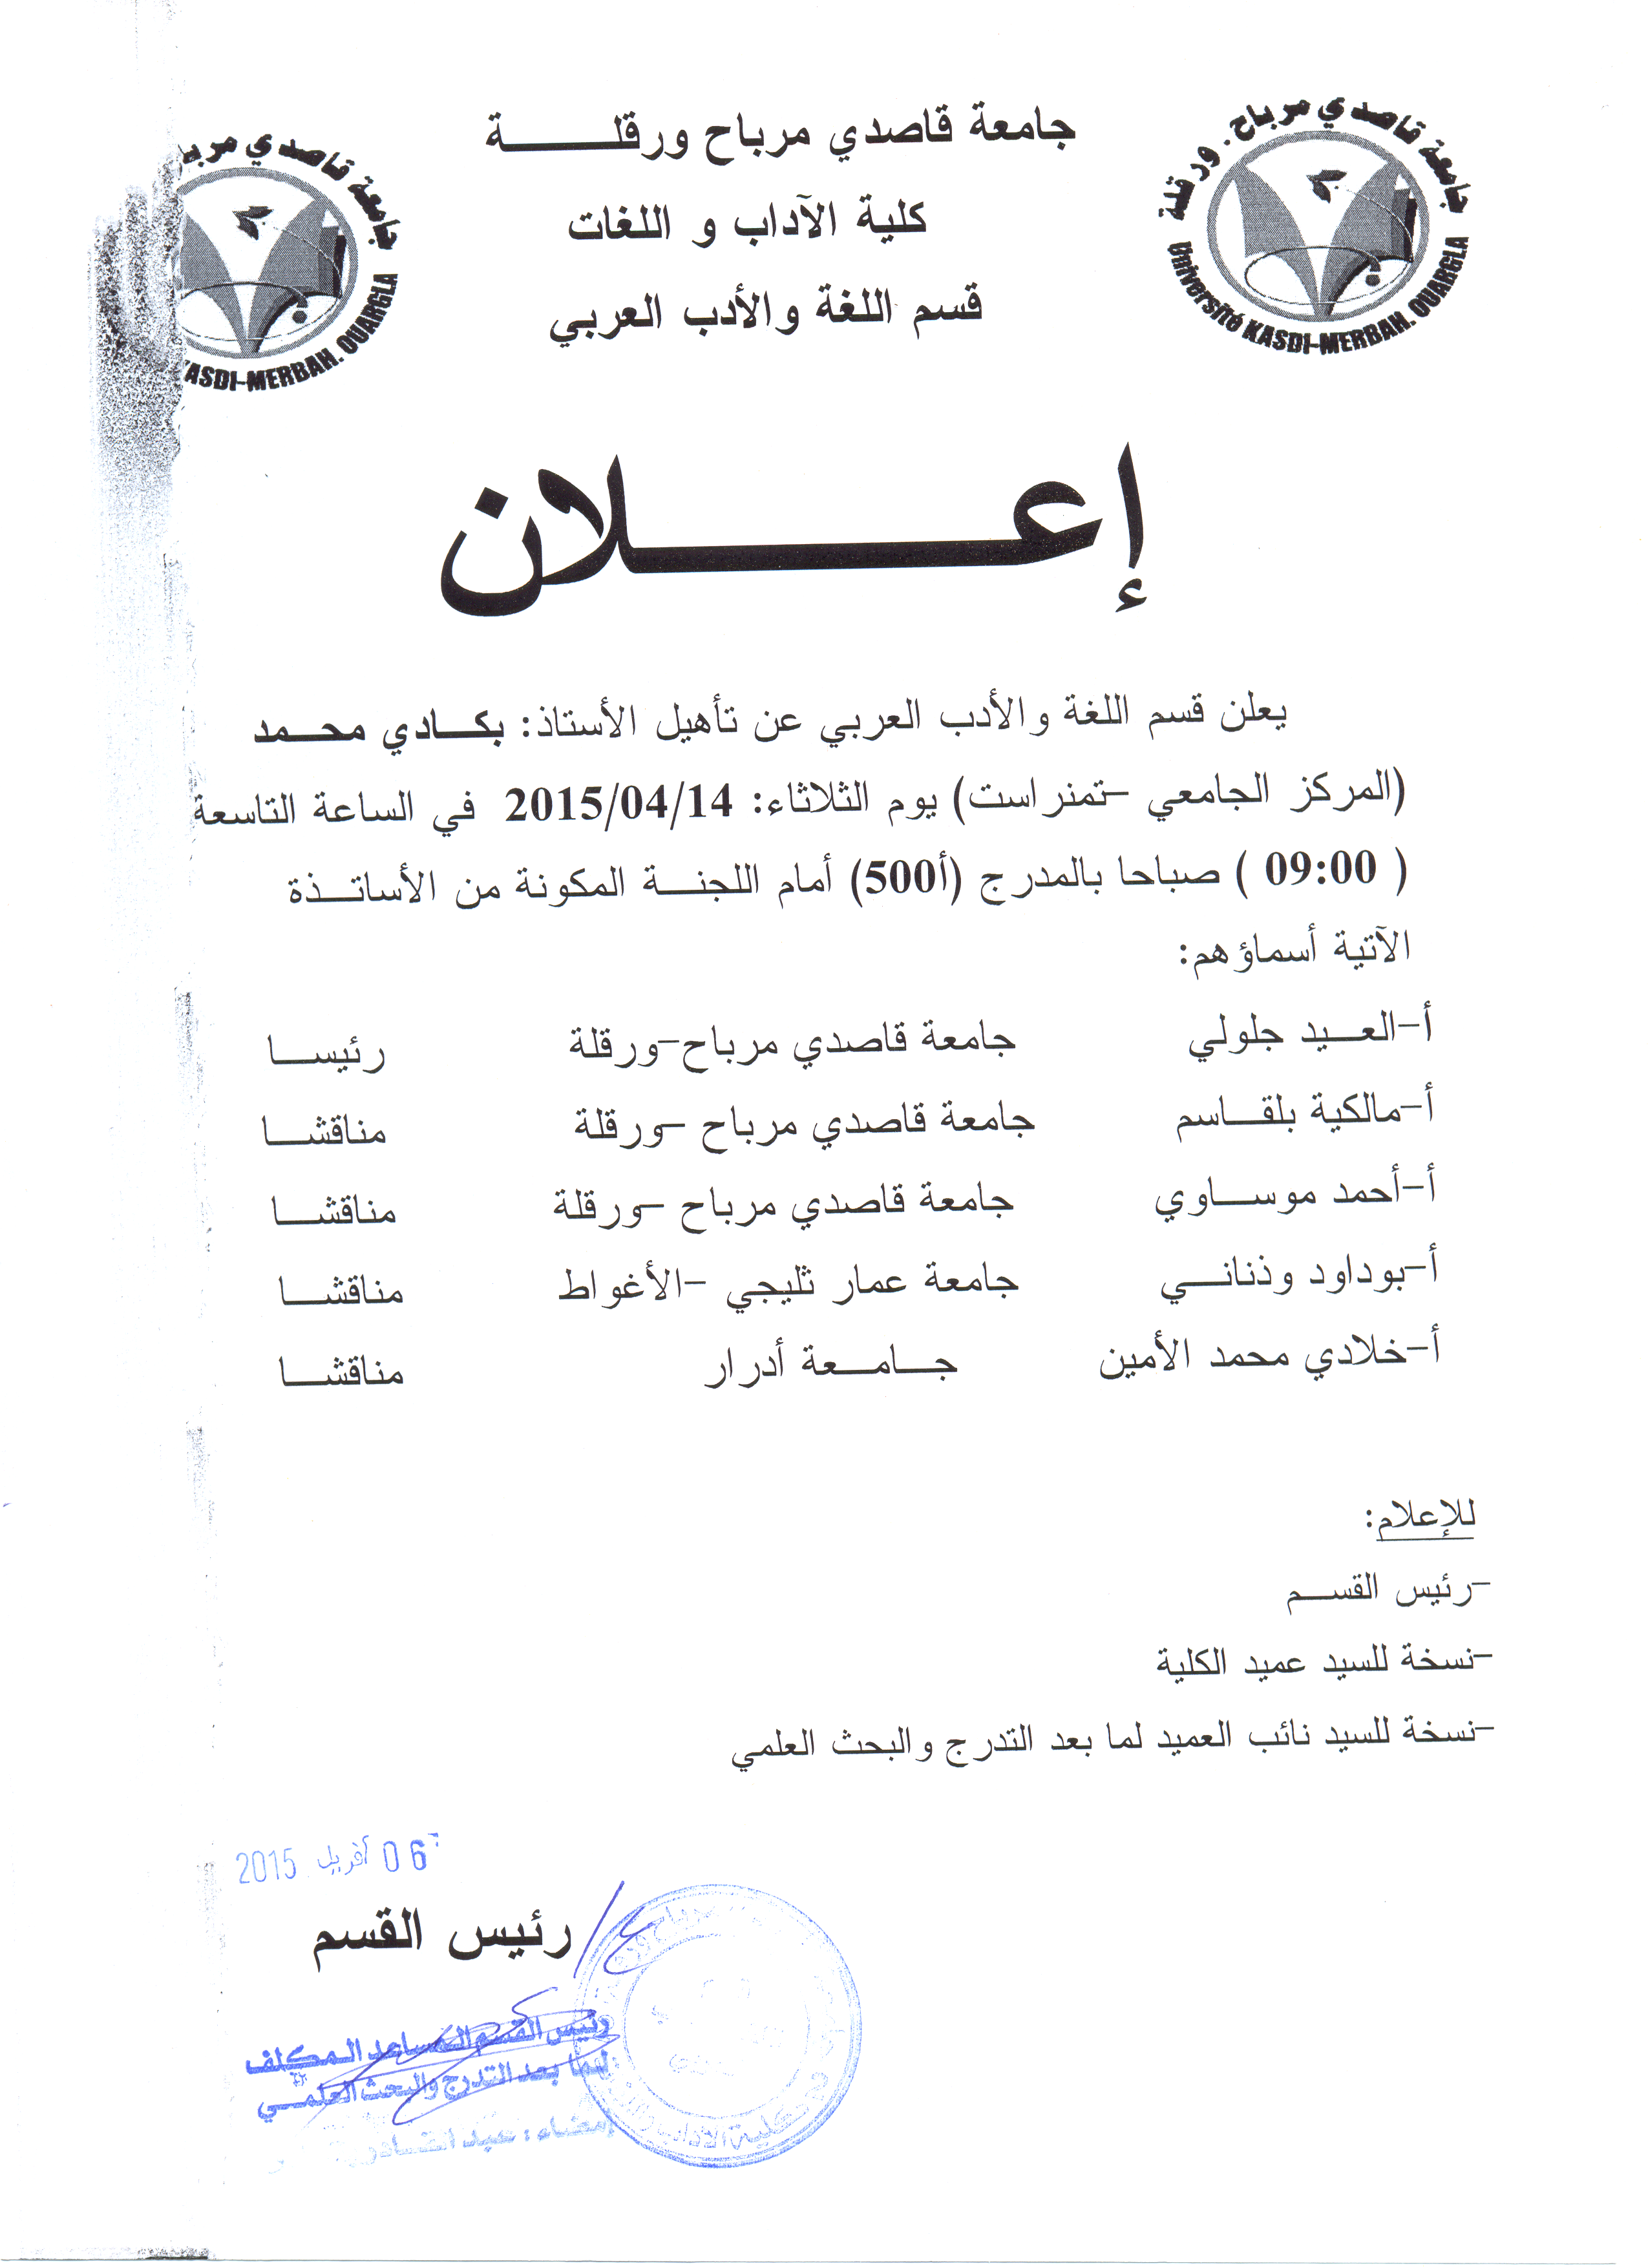 dr bakadi mohammed 14 04 2015